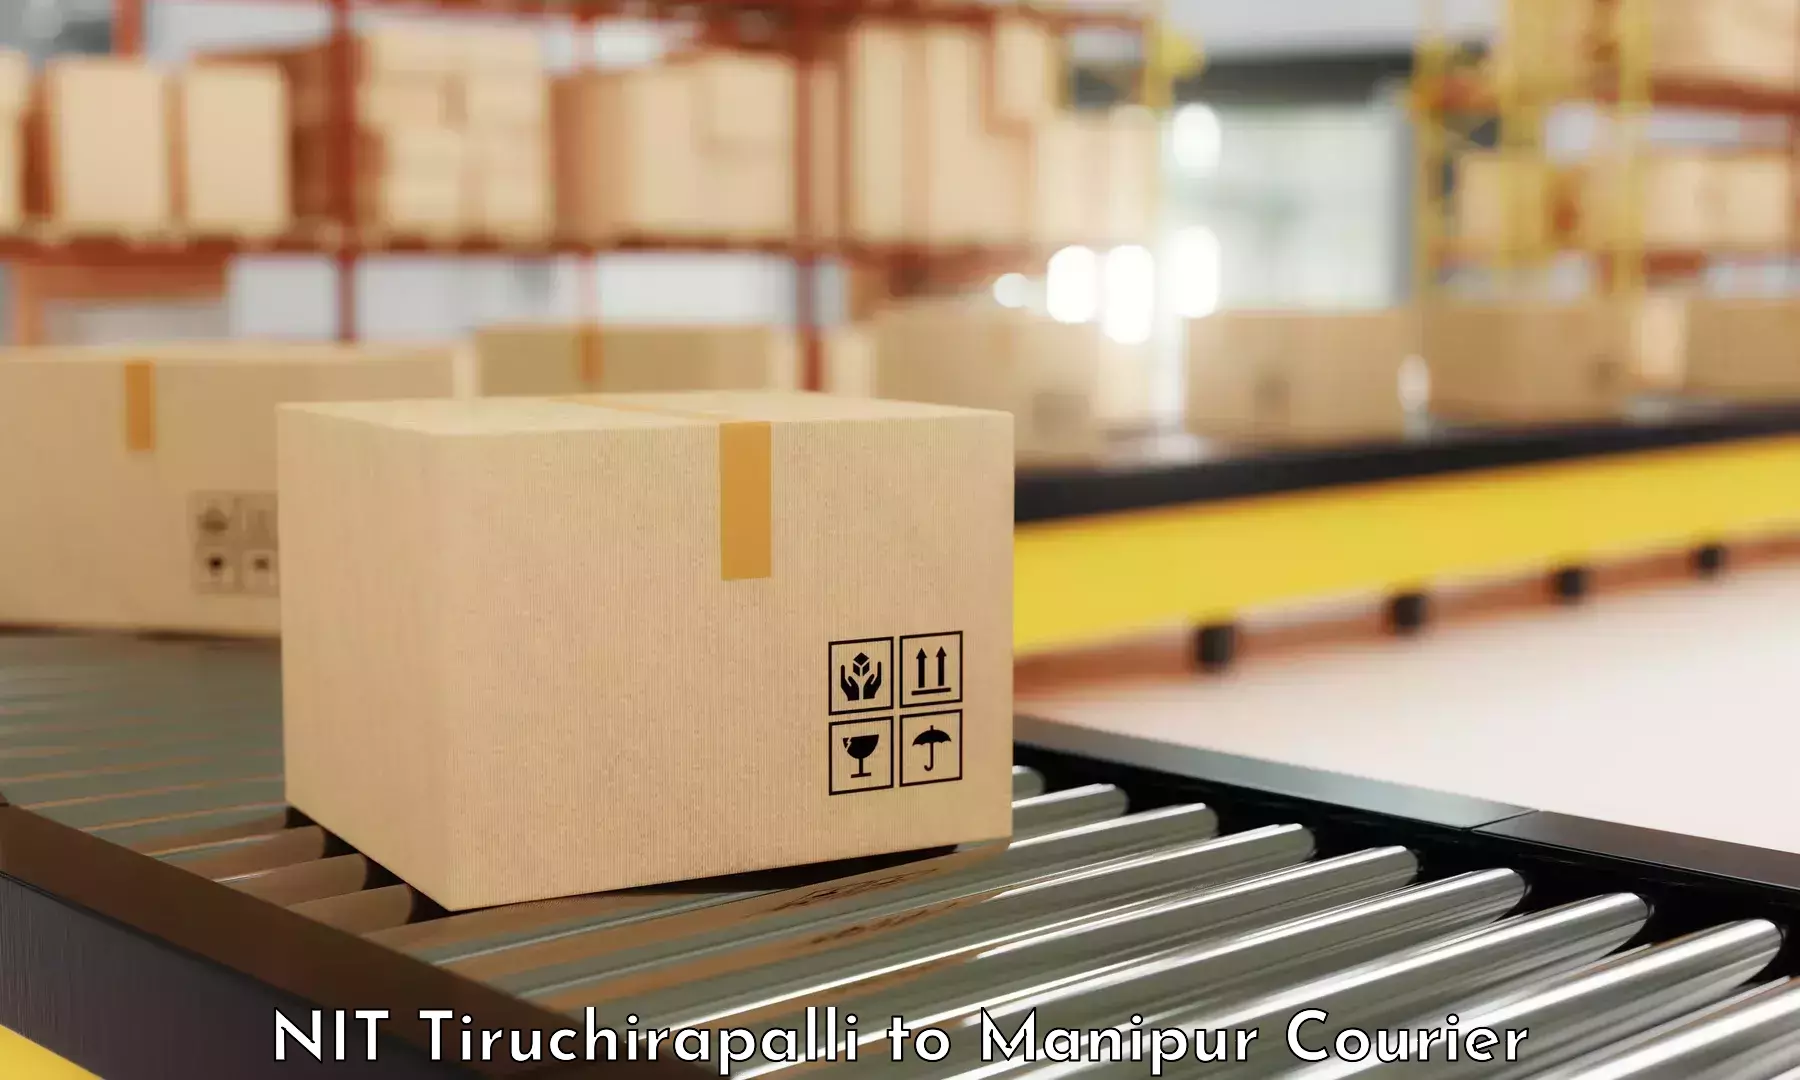 Express logistics providers NIT Tiruchirapalli to Kakching